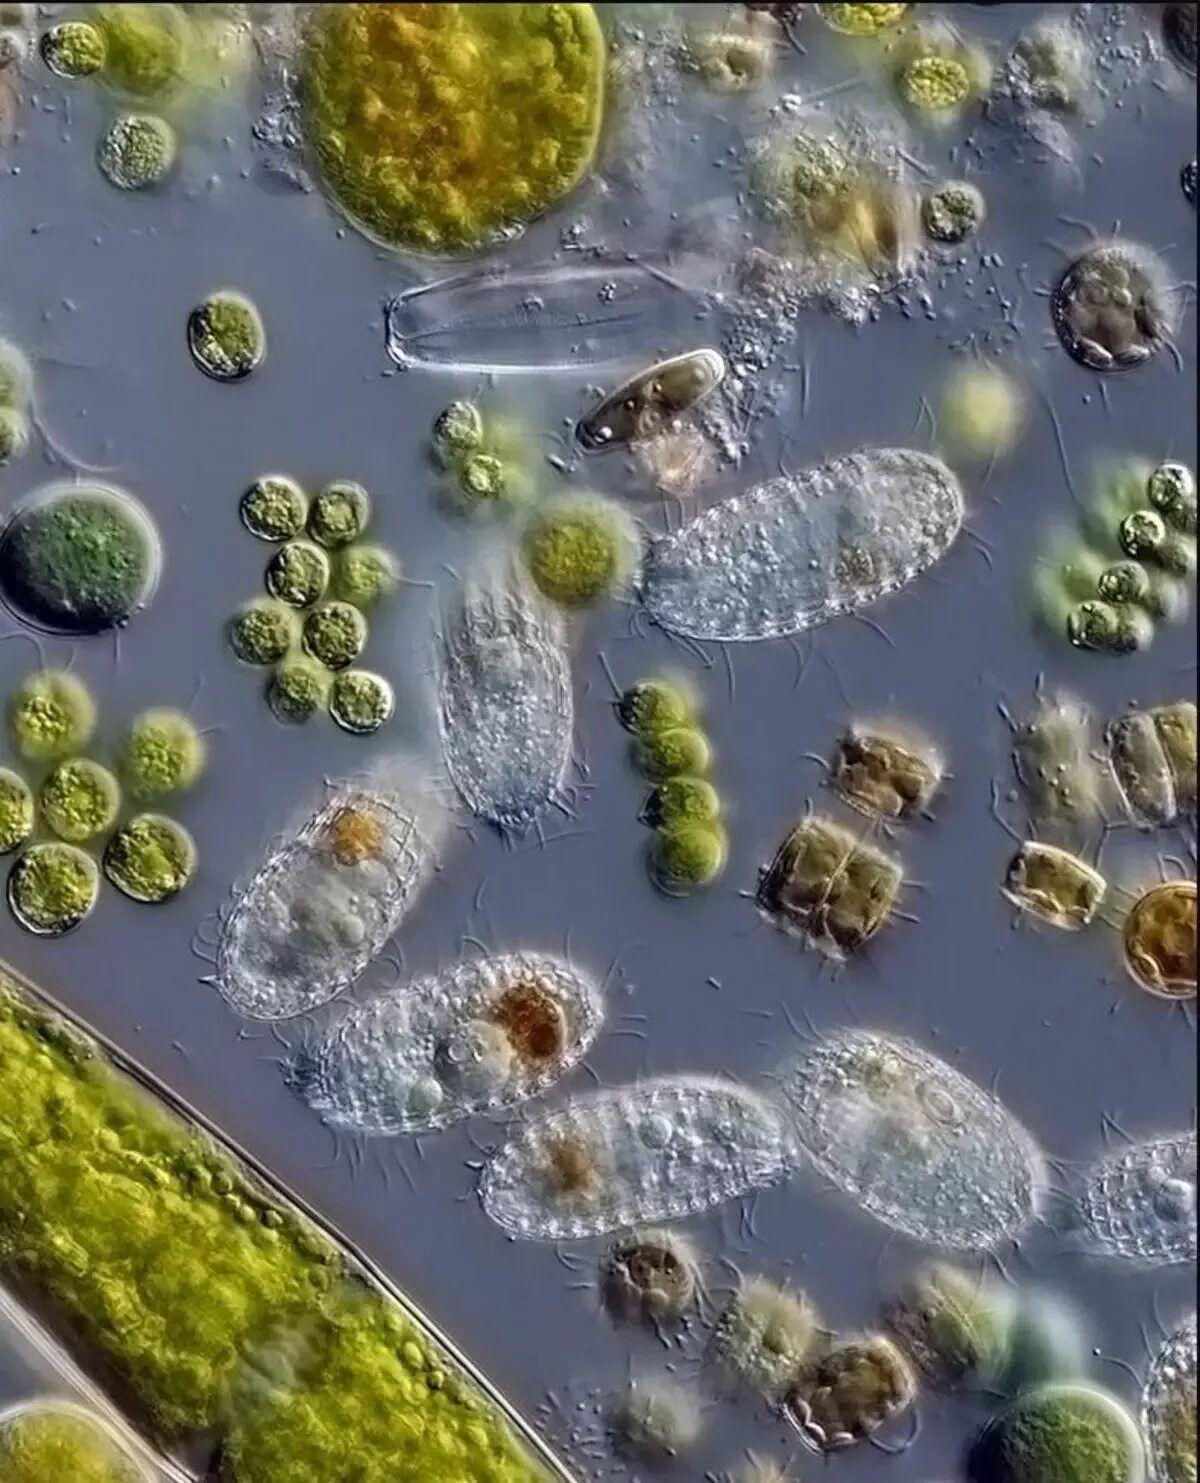 Бактерии в воде под микроскопом. Микроорганизмы в воде под микроскопом. Микробы в капле воды под микроскопом. Бактерии под микроскопом.